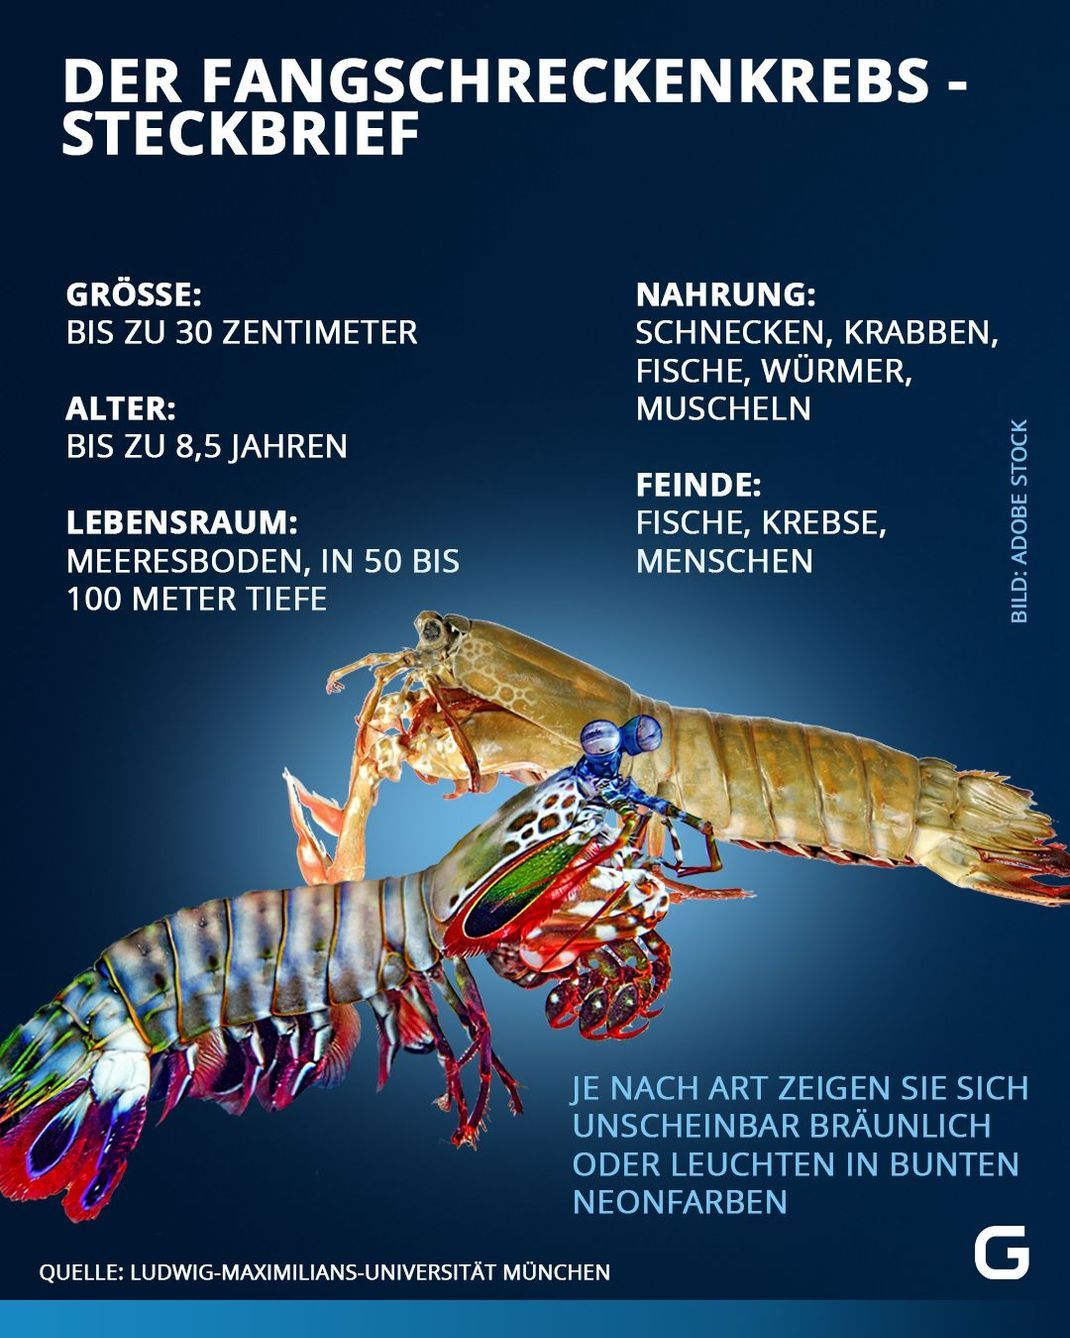 Fangschreckenkrebs im Steckbrief: Größe, Alter, Lebensraum, Nahrung und Feinde des Krebses. 